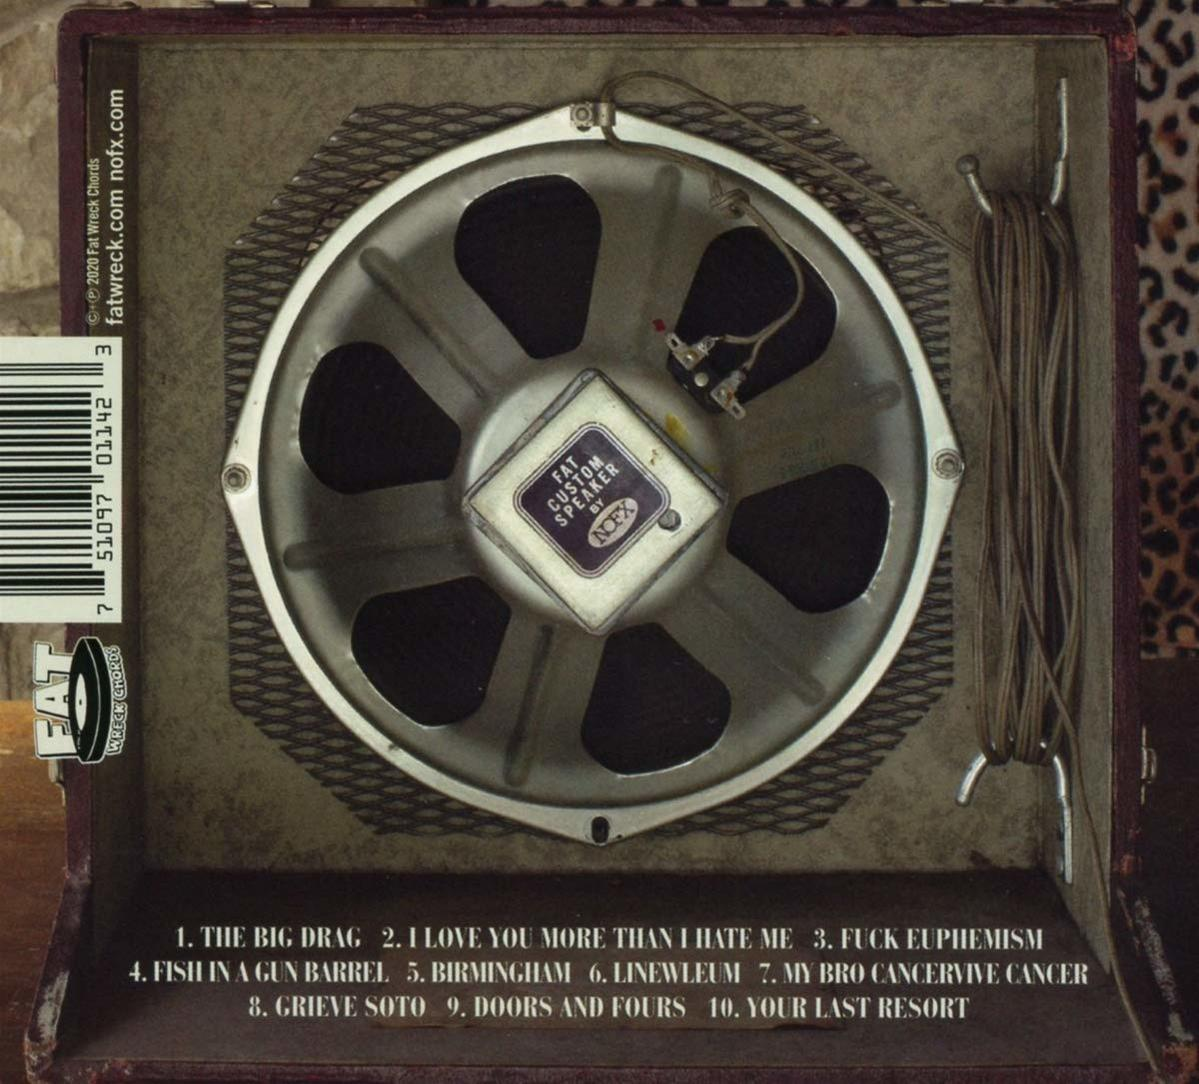 Nofx - SINGLE ALBUM - (CD)